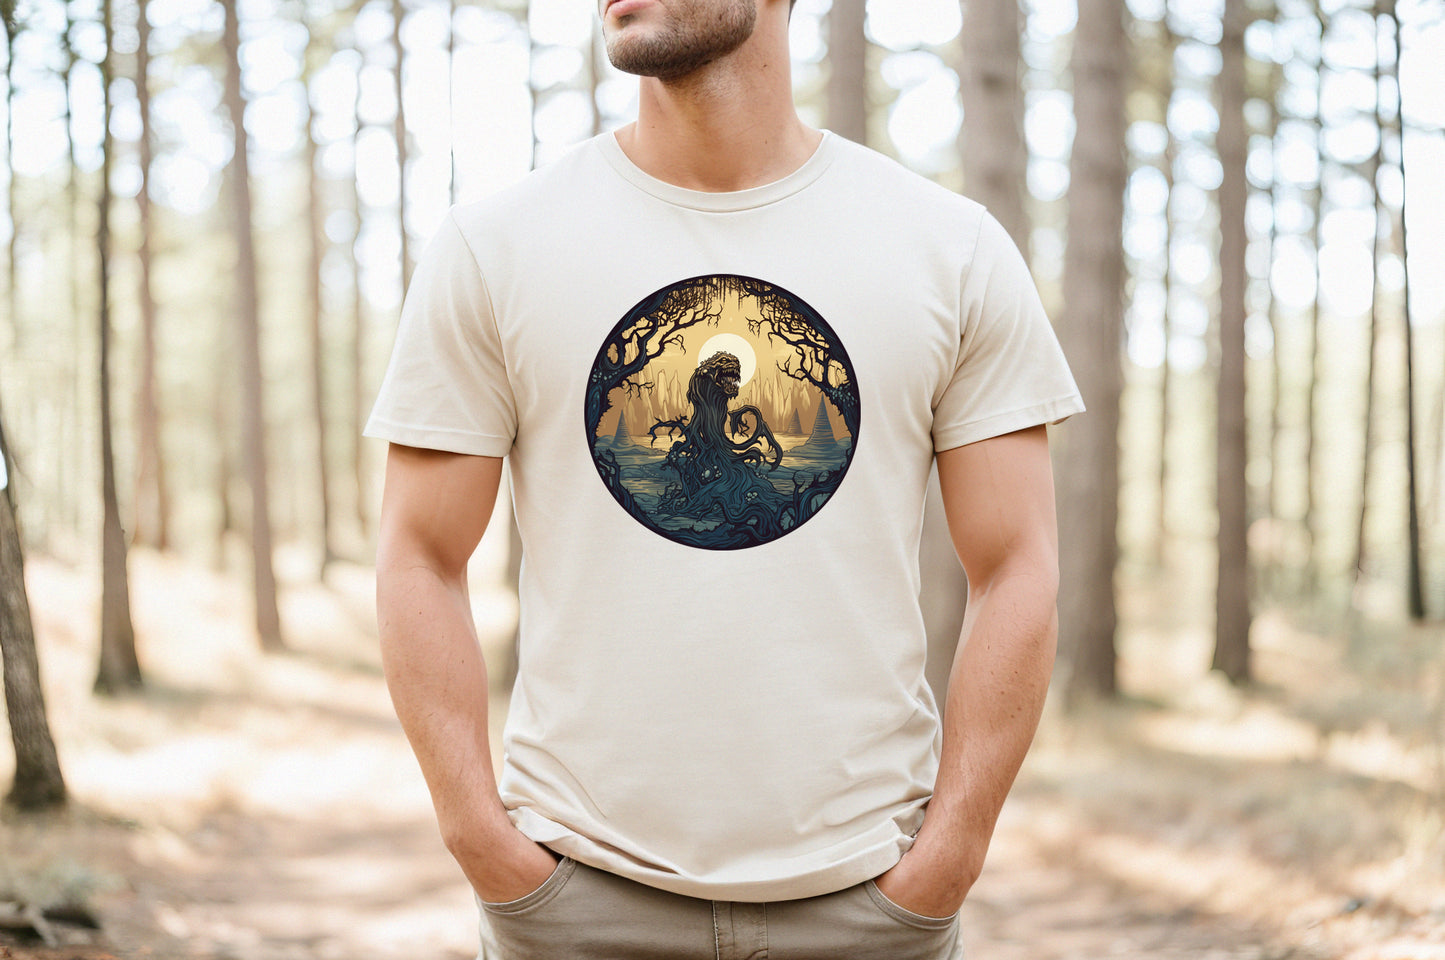 Swamp Monster Shirt, D&D Monster Shirt, DnD Shirt, RPG Monster Shirt, Swamp Demon Shirt, Gamer Shirt, Fantasy Shirt